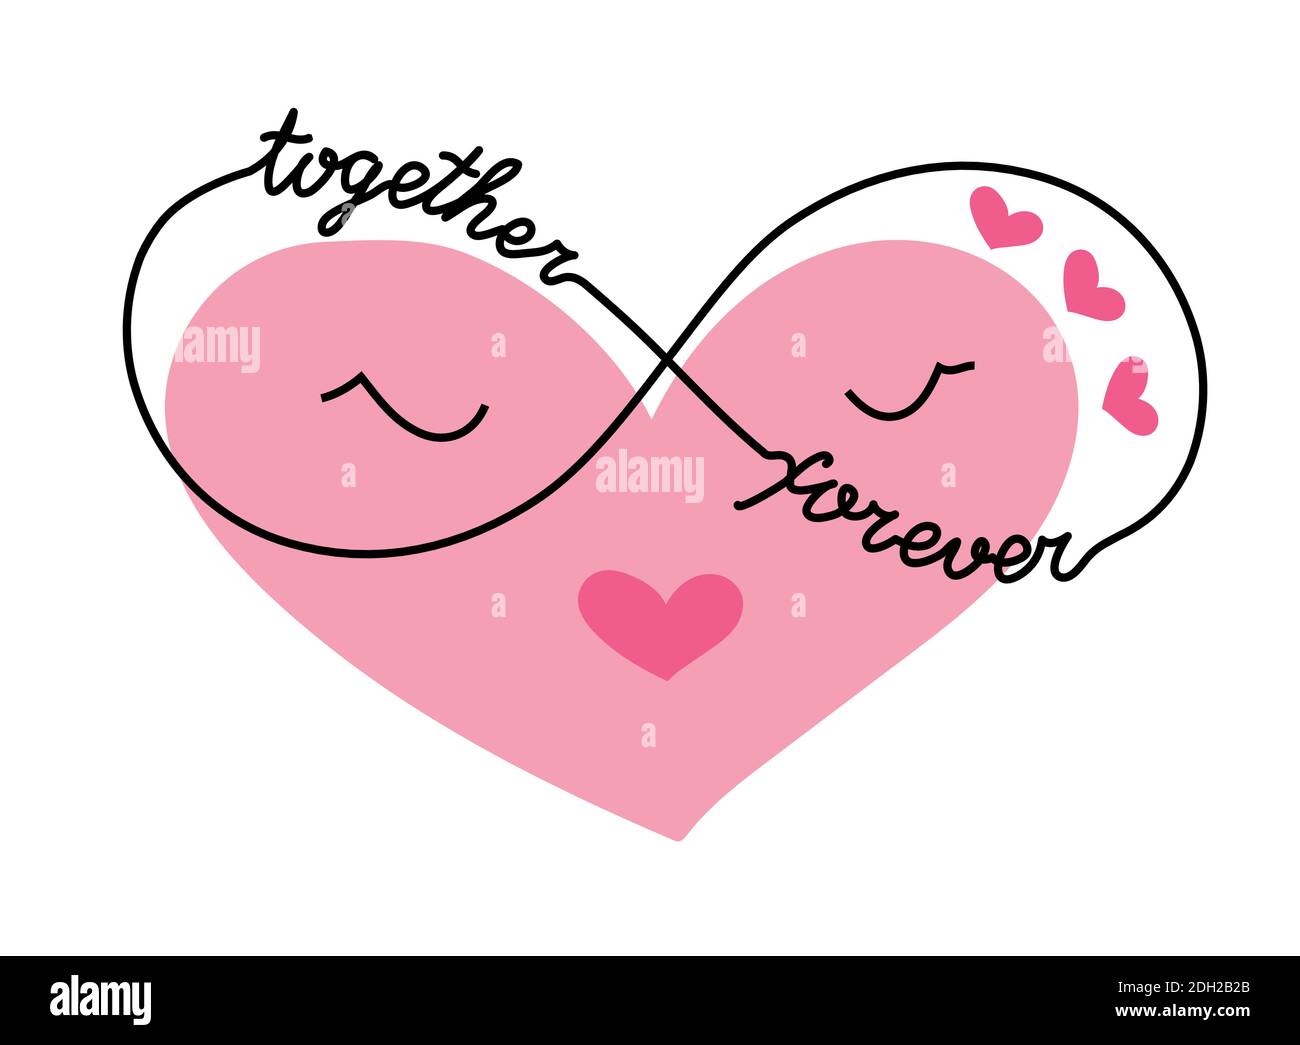 Carino cuore cartoon con simbolo infinito. L'icona di amore rosa per San Valentino. Un disegno di linea continua di cuore carino in bicchieri con lettere Illustrazione Vettoriale